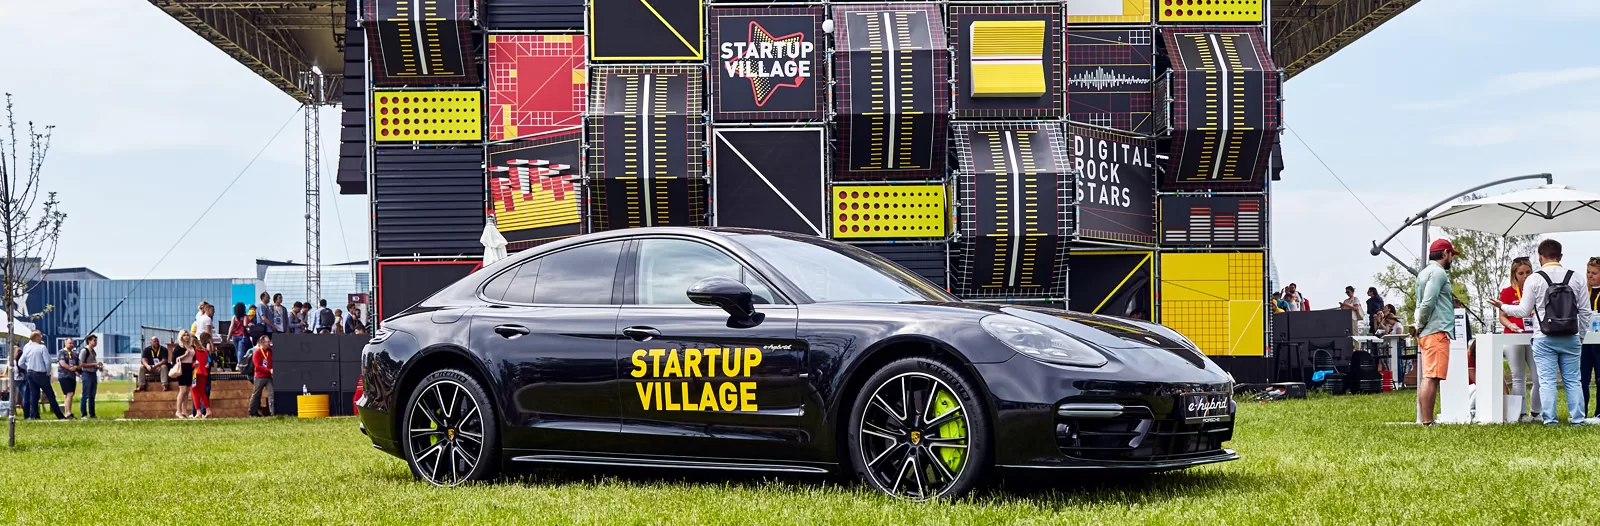 Знакомство с инновациями Porsche на конференции Startup Village 2019.